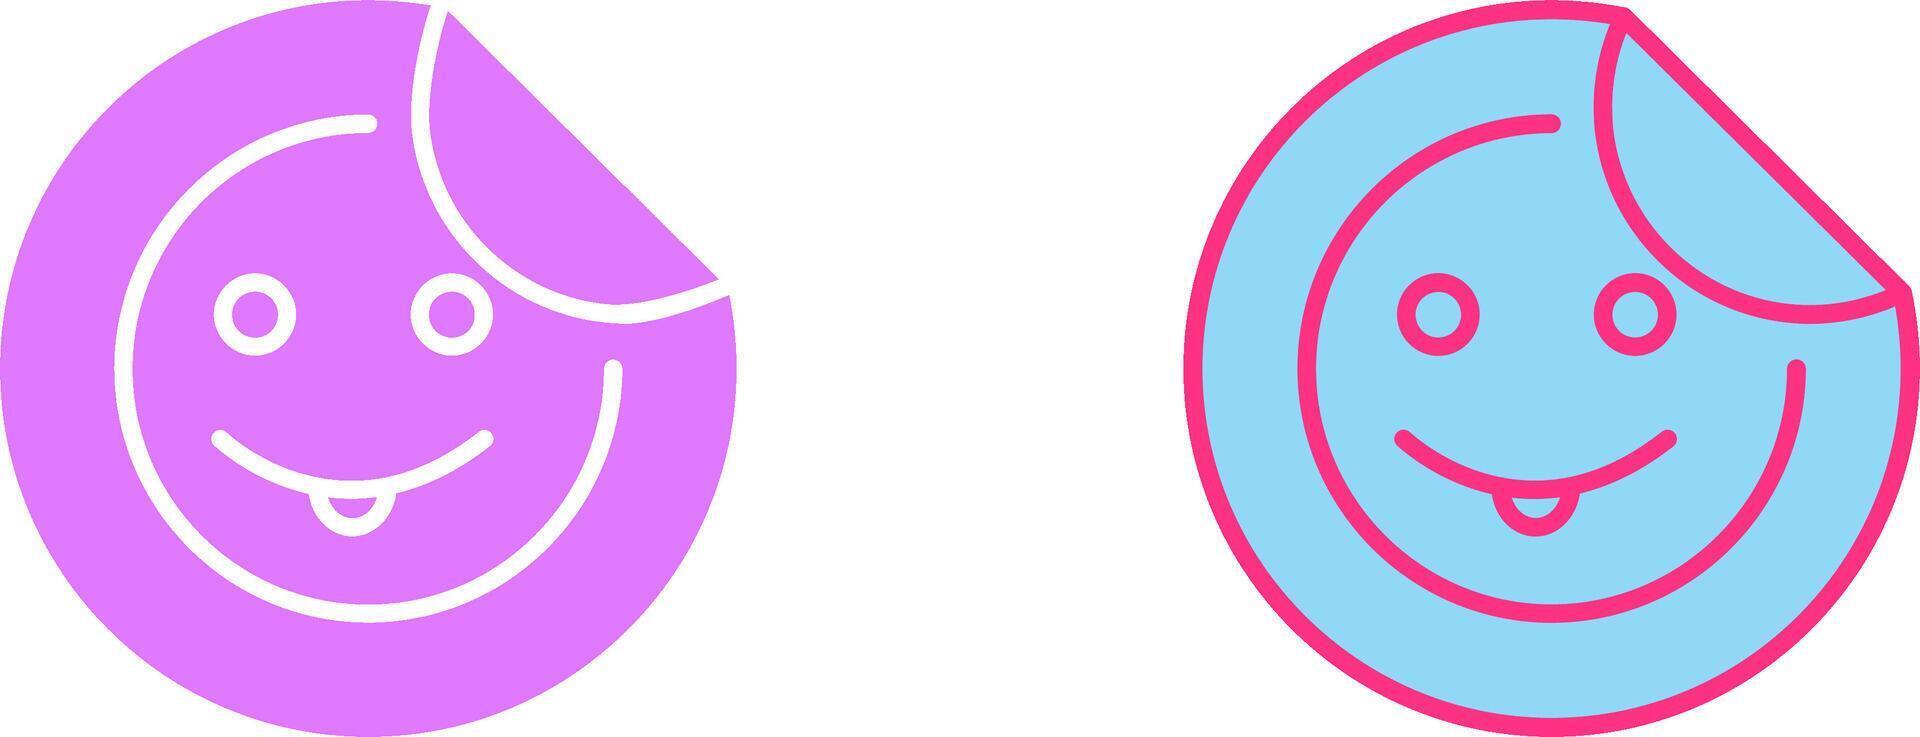 Sticker Icon Design vector